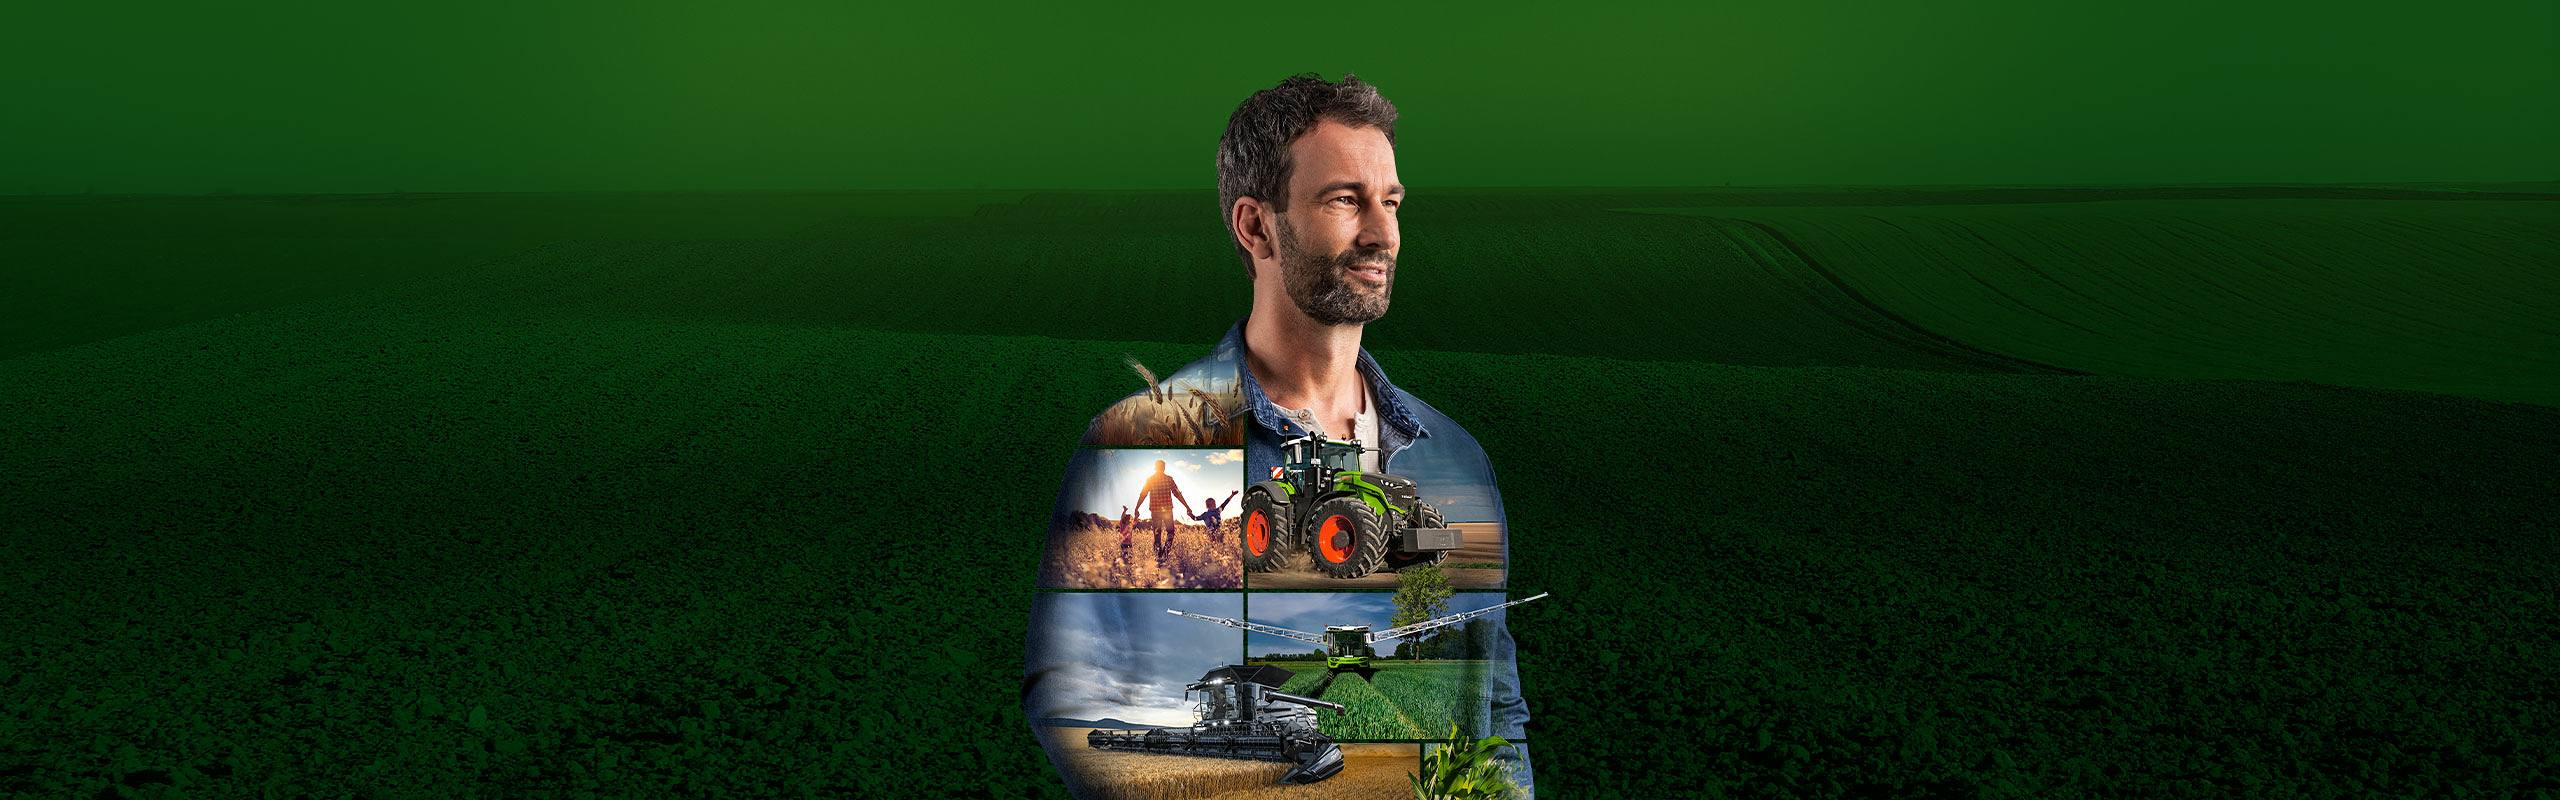 Maanviljelijä seisoo vihreän taustakuvan edessä ja katsoo motivoituneena tulevaisuuteen. Hänen yläosassaan on kuvattuna Fendt-tuotteita.